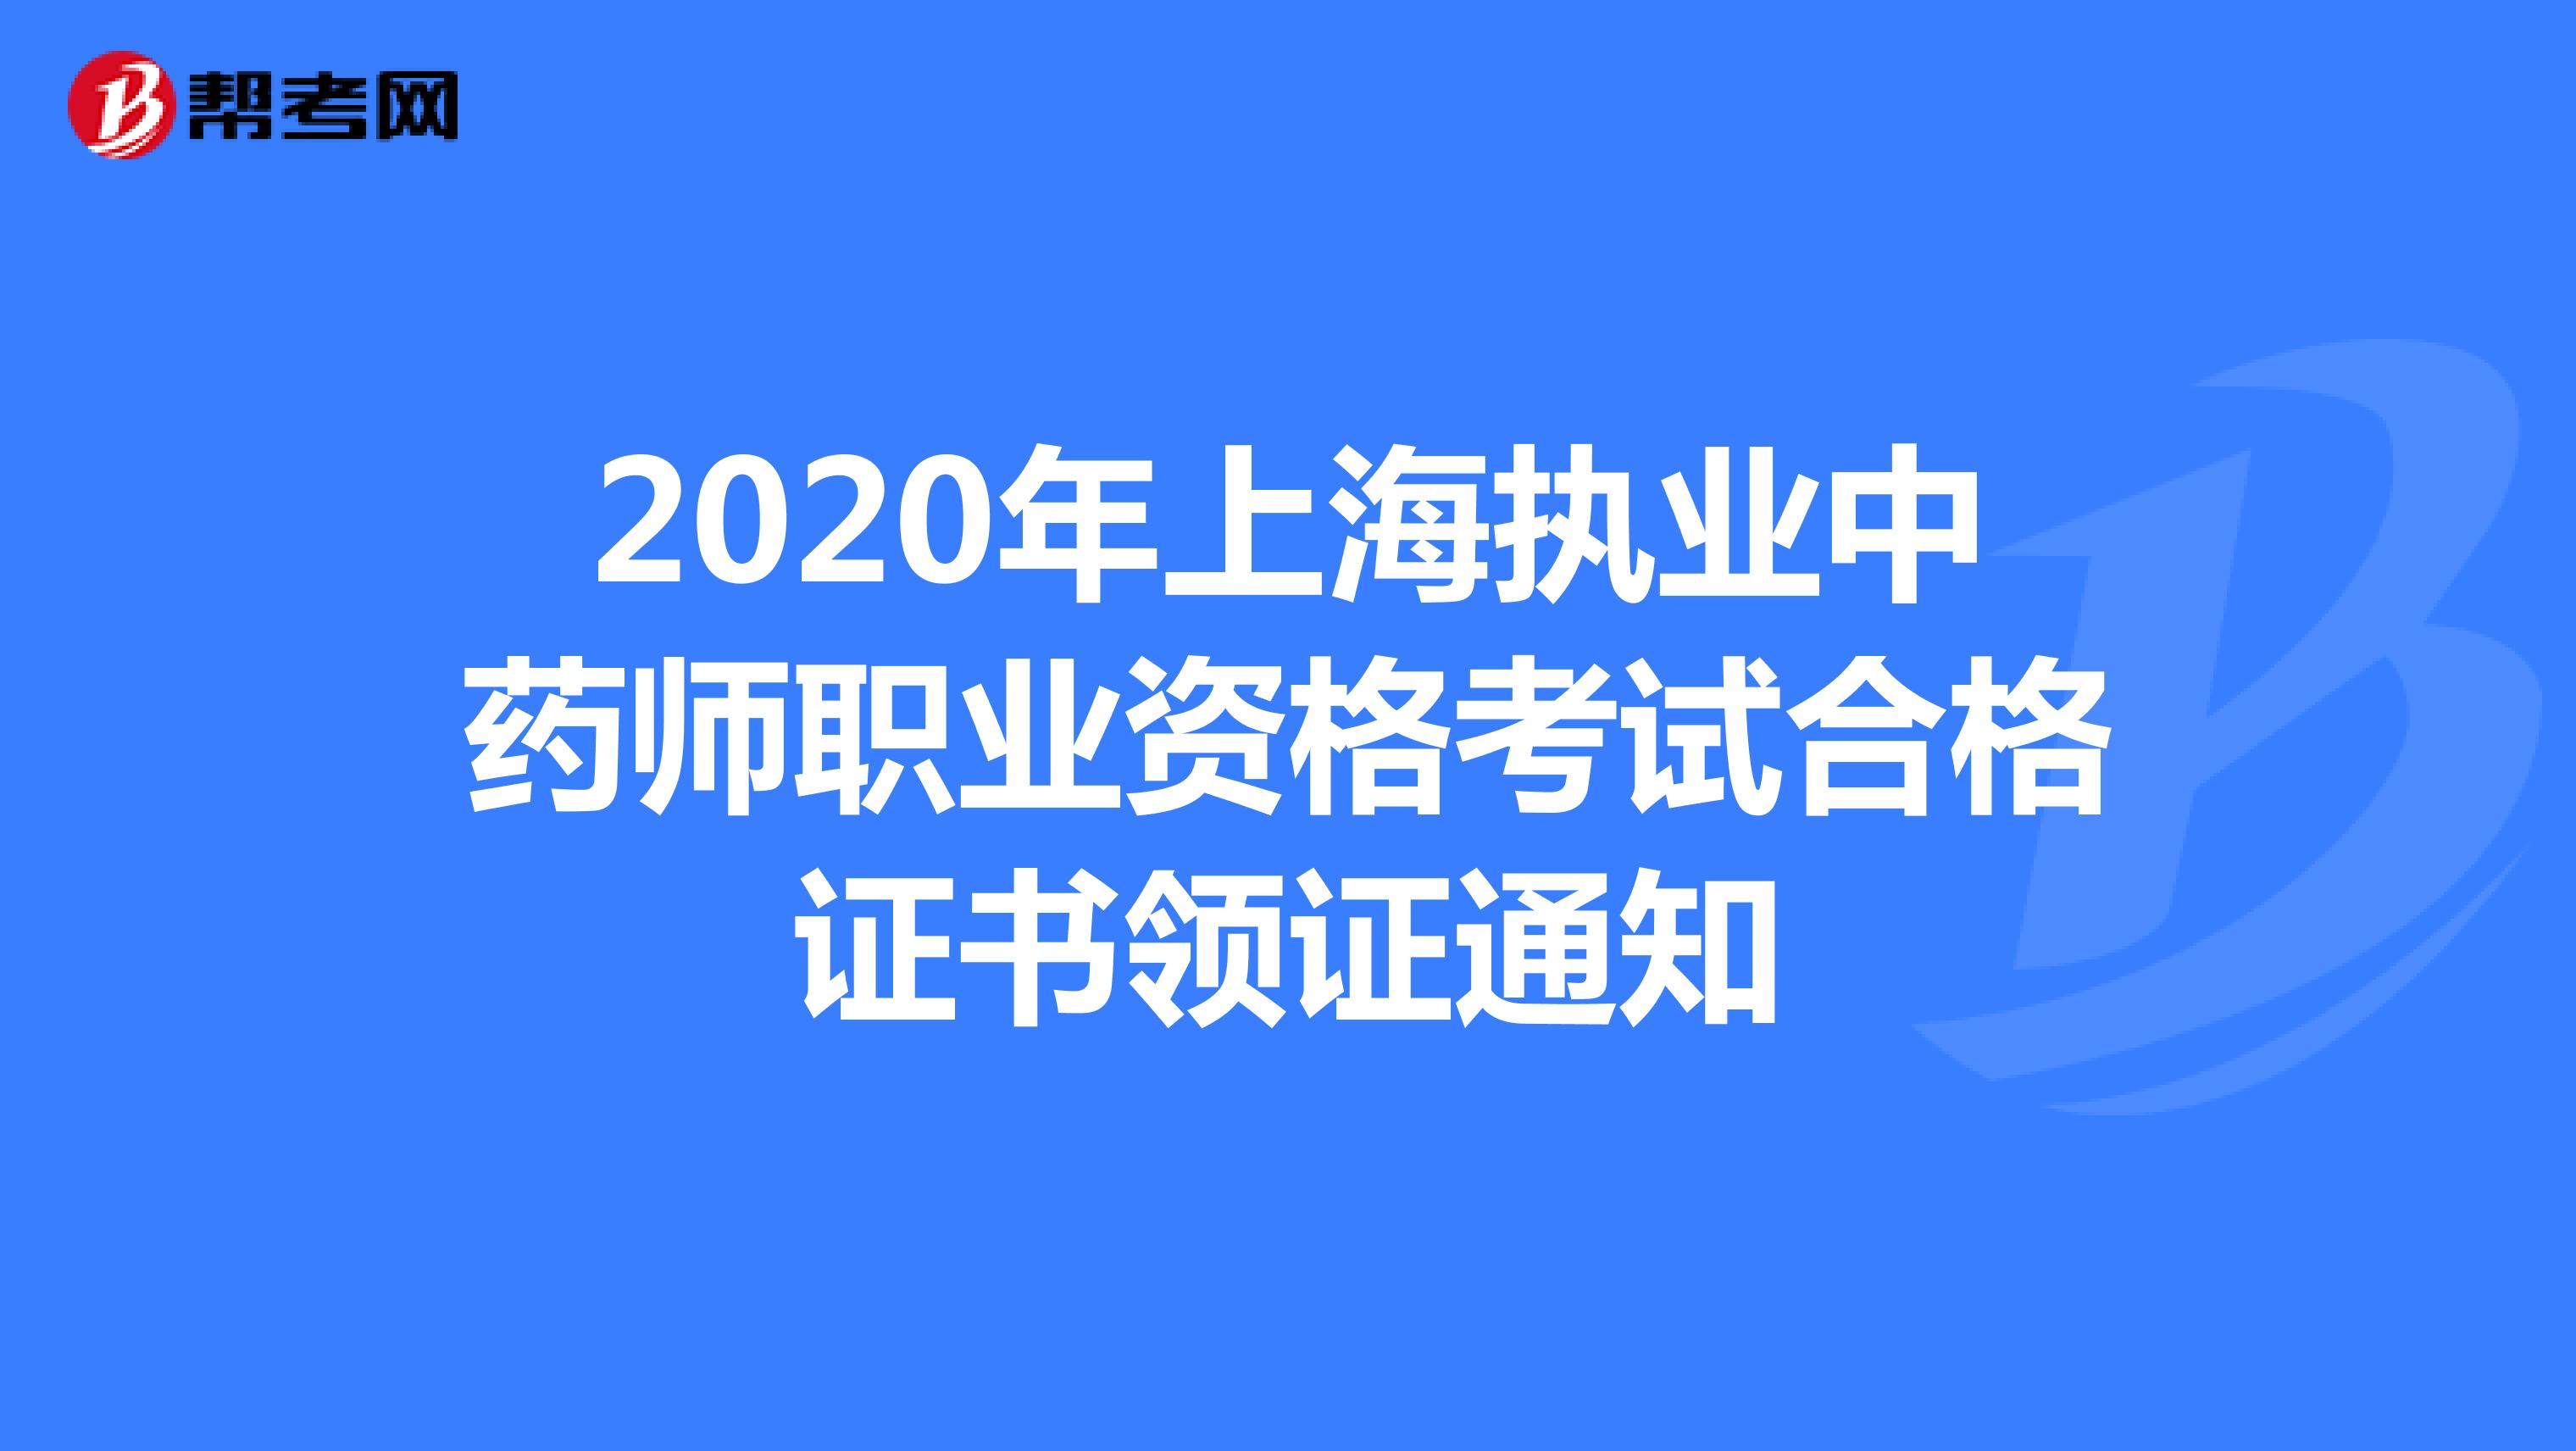 2020年上海执业中药师职业资格考试合格证书领证通知